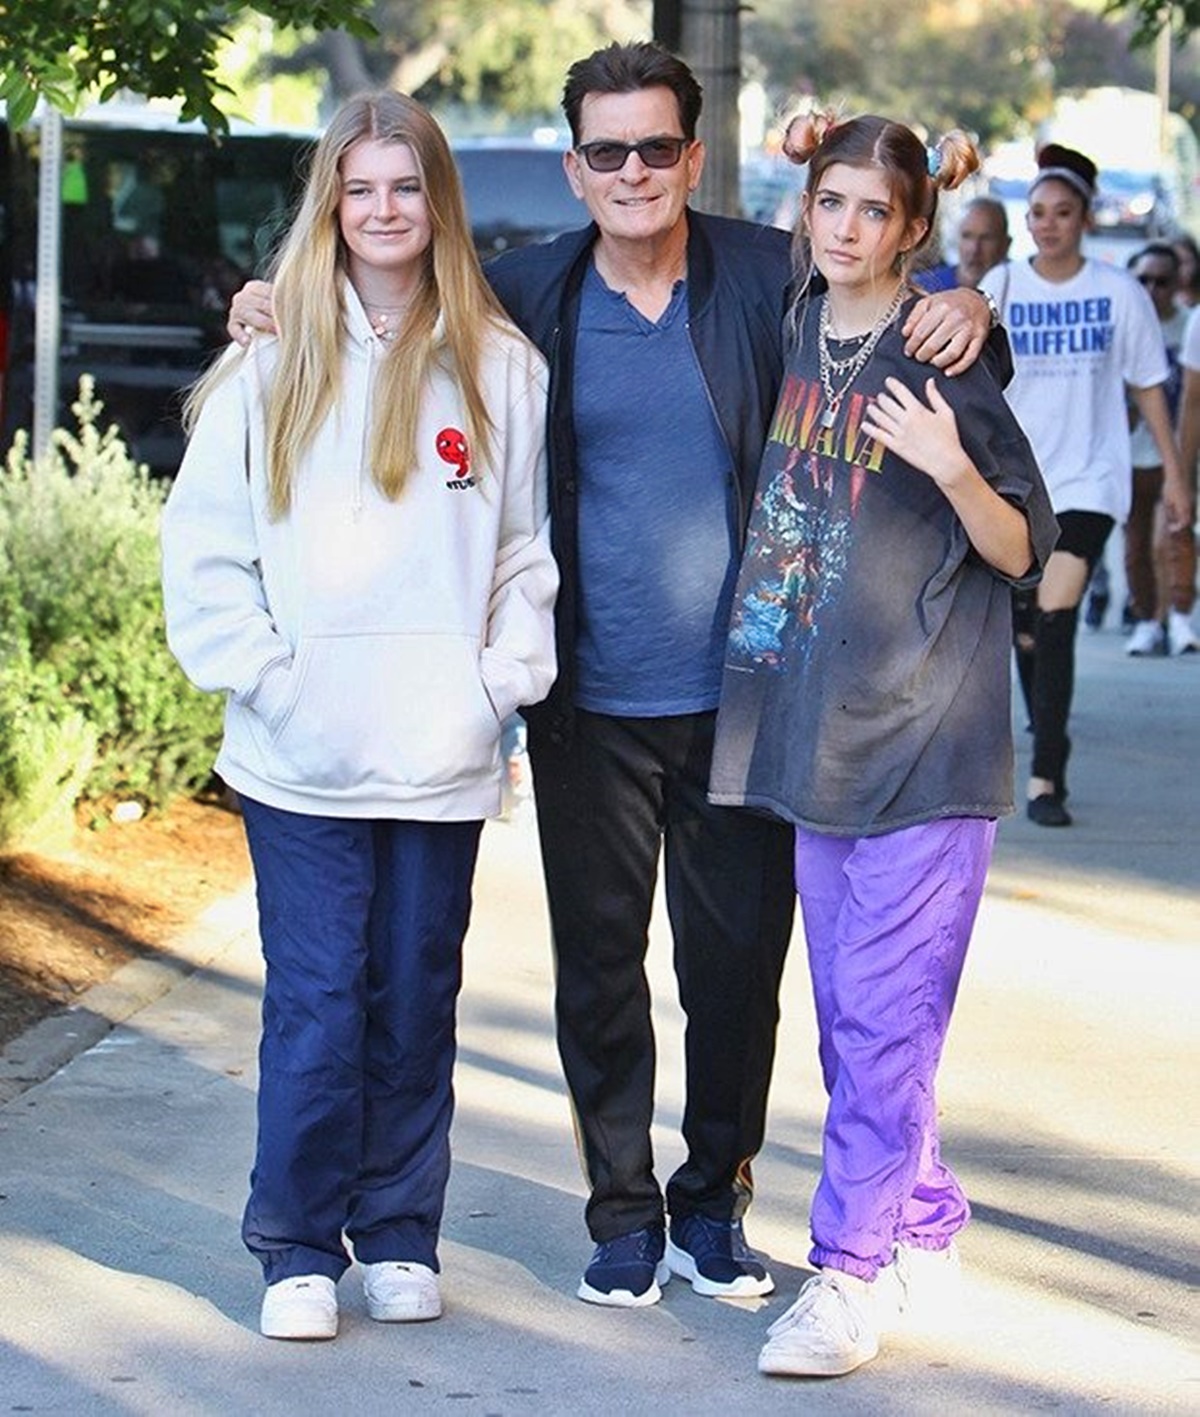 Charlie Sheen ritkán látott lányai felnőttek és csodálatos nőkké váltak